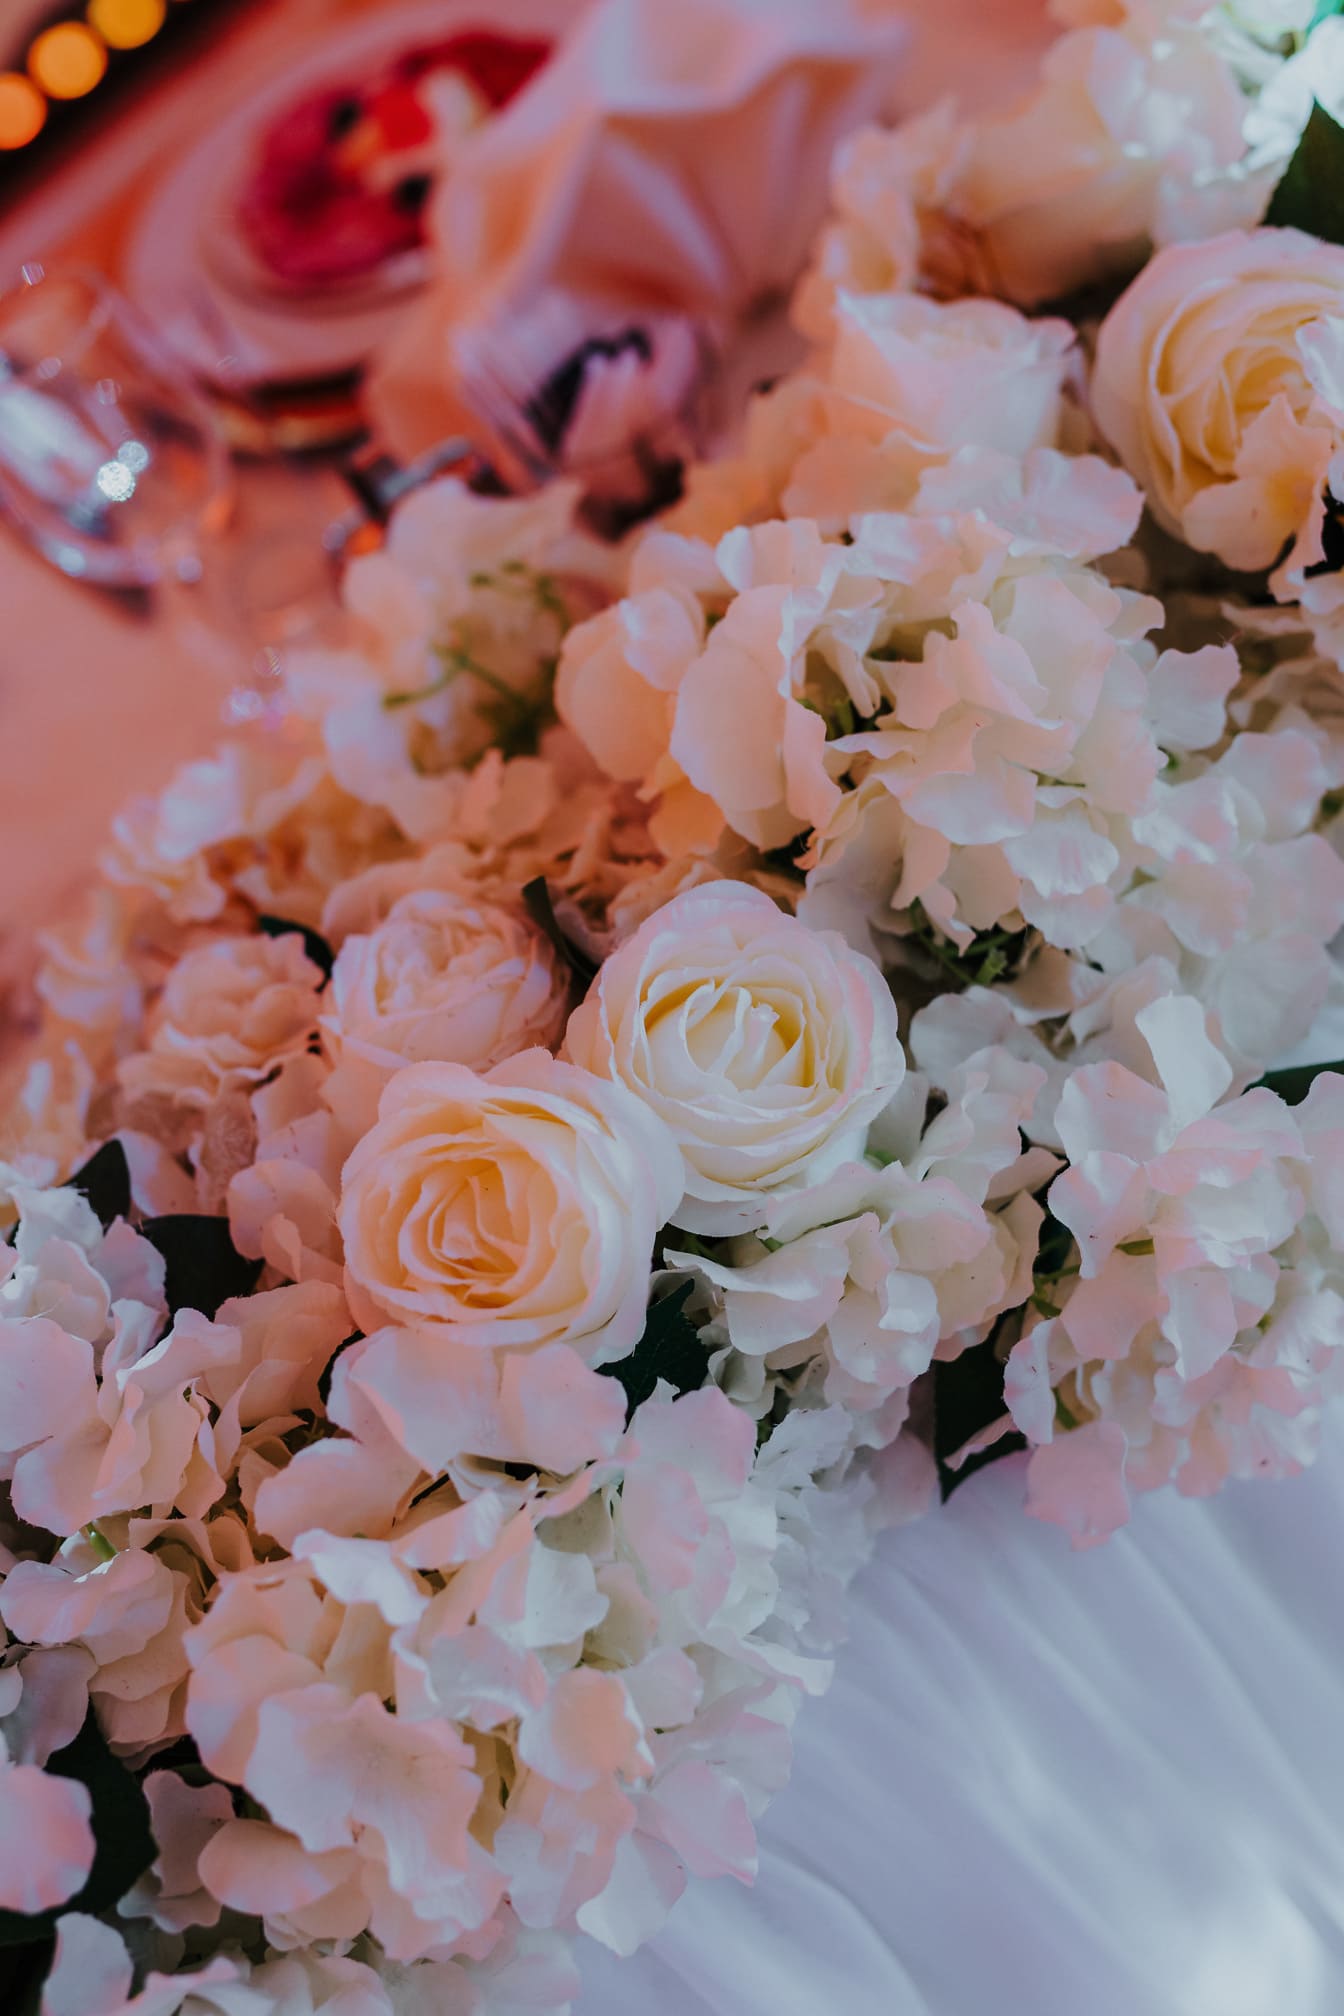 ดอกกุหลาบสีขาวที่สวยงามในการจัดช่อดอกไม้งานแต่งงาน